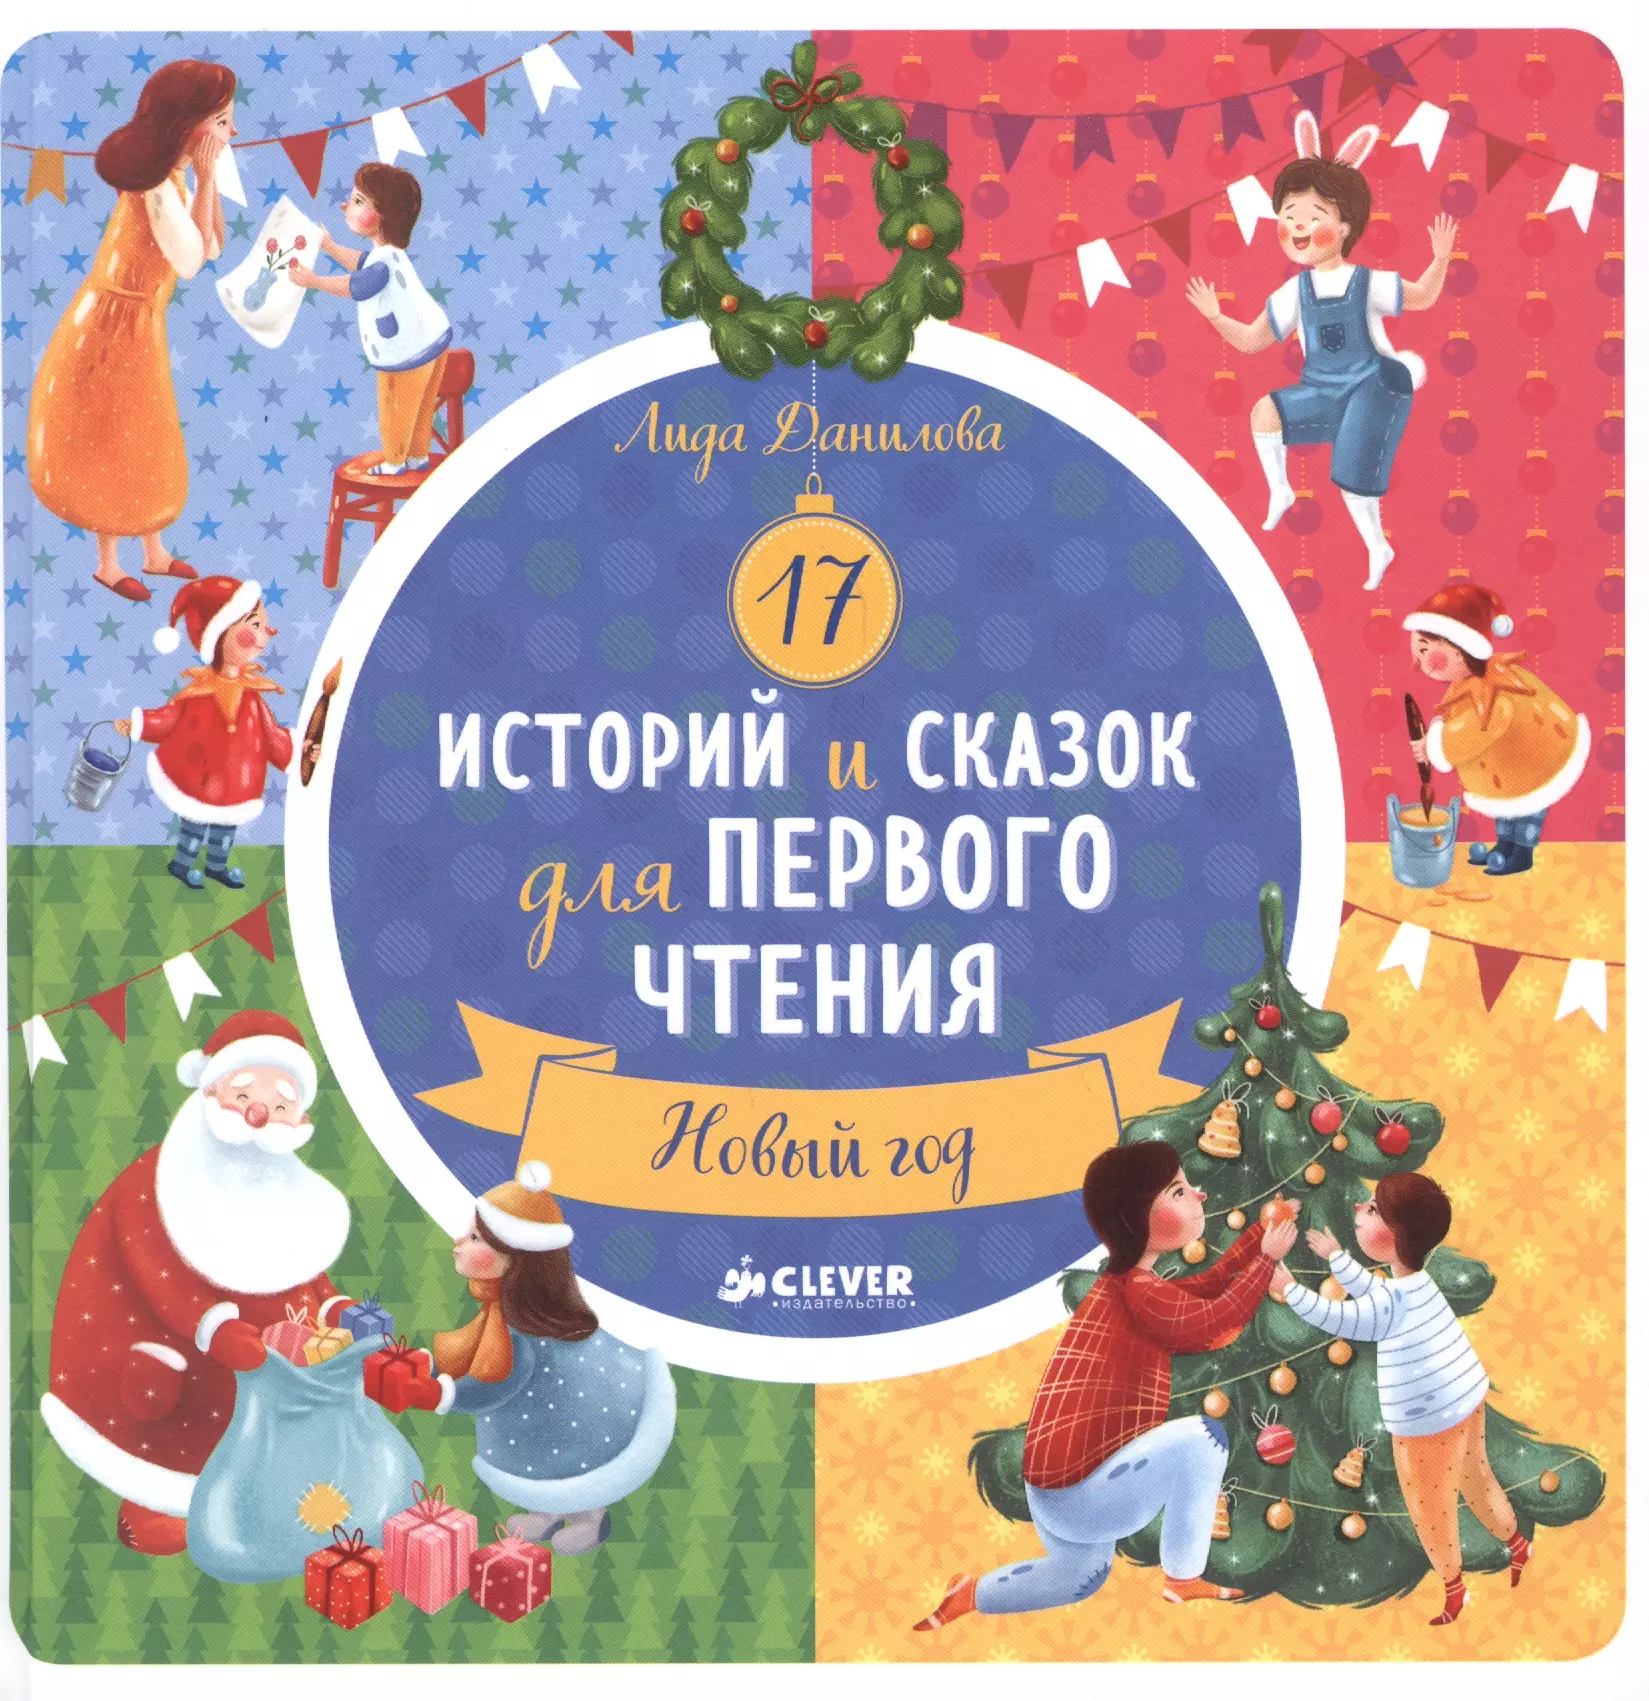 Данилова Лидия, Ветошкина Кристина - 17 историй и сказок для первого чтения. Новый год